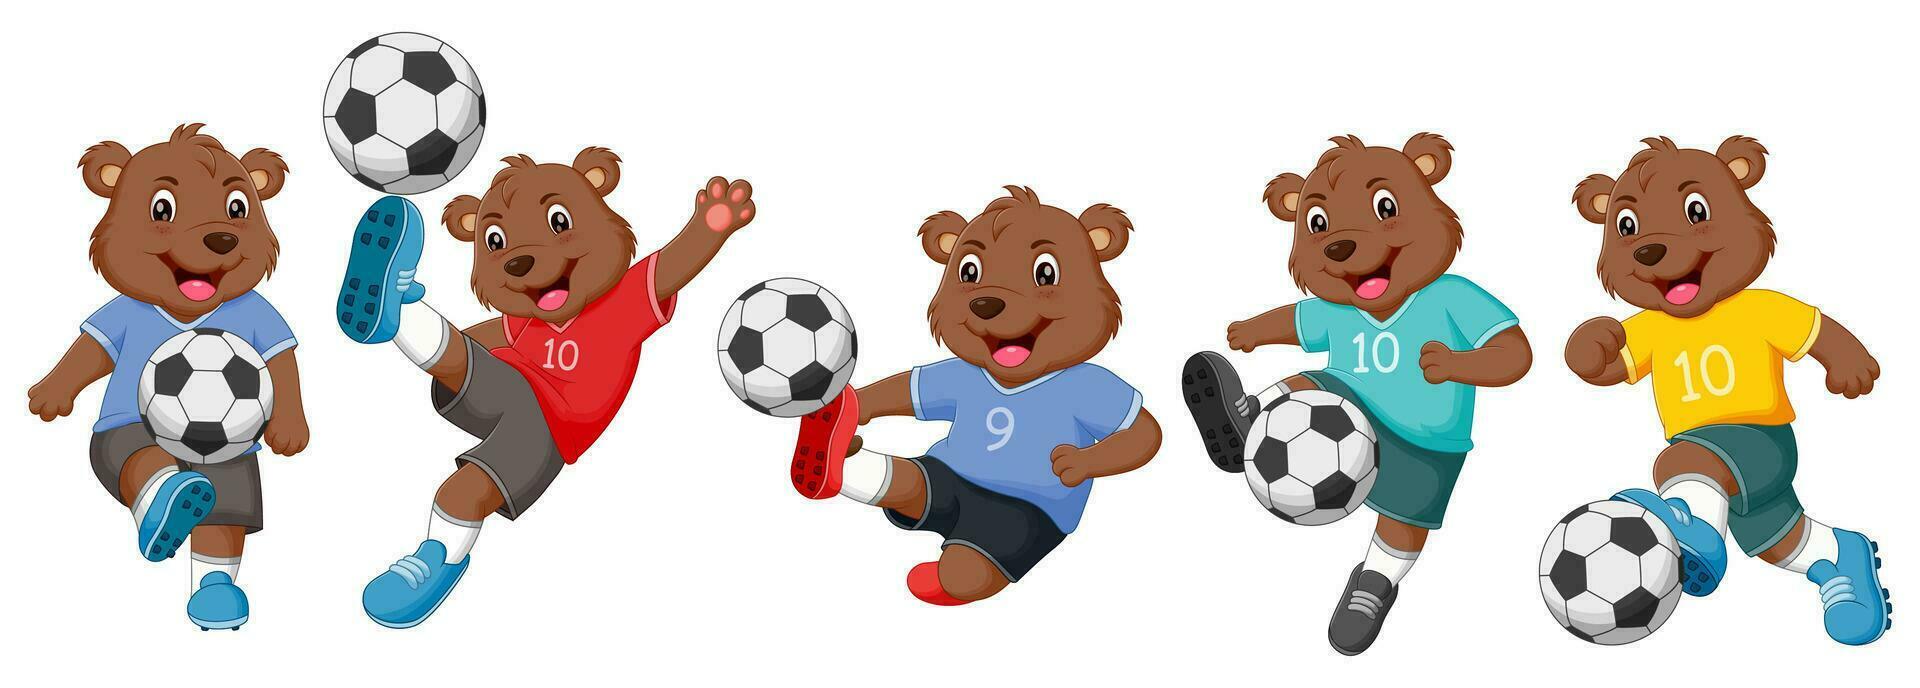 ensemble de ours dessin animé en jouant football. vecteur illustration